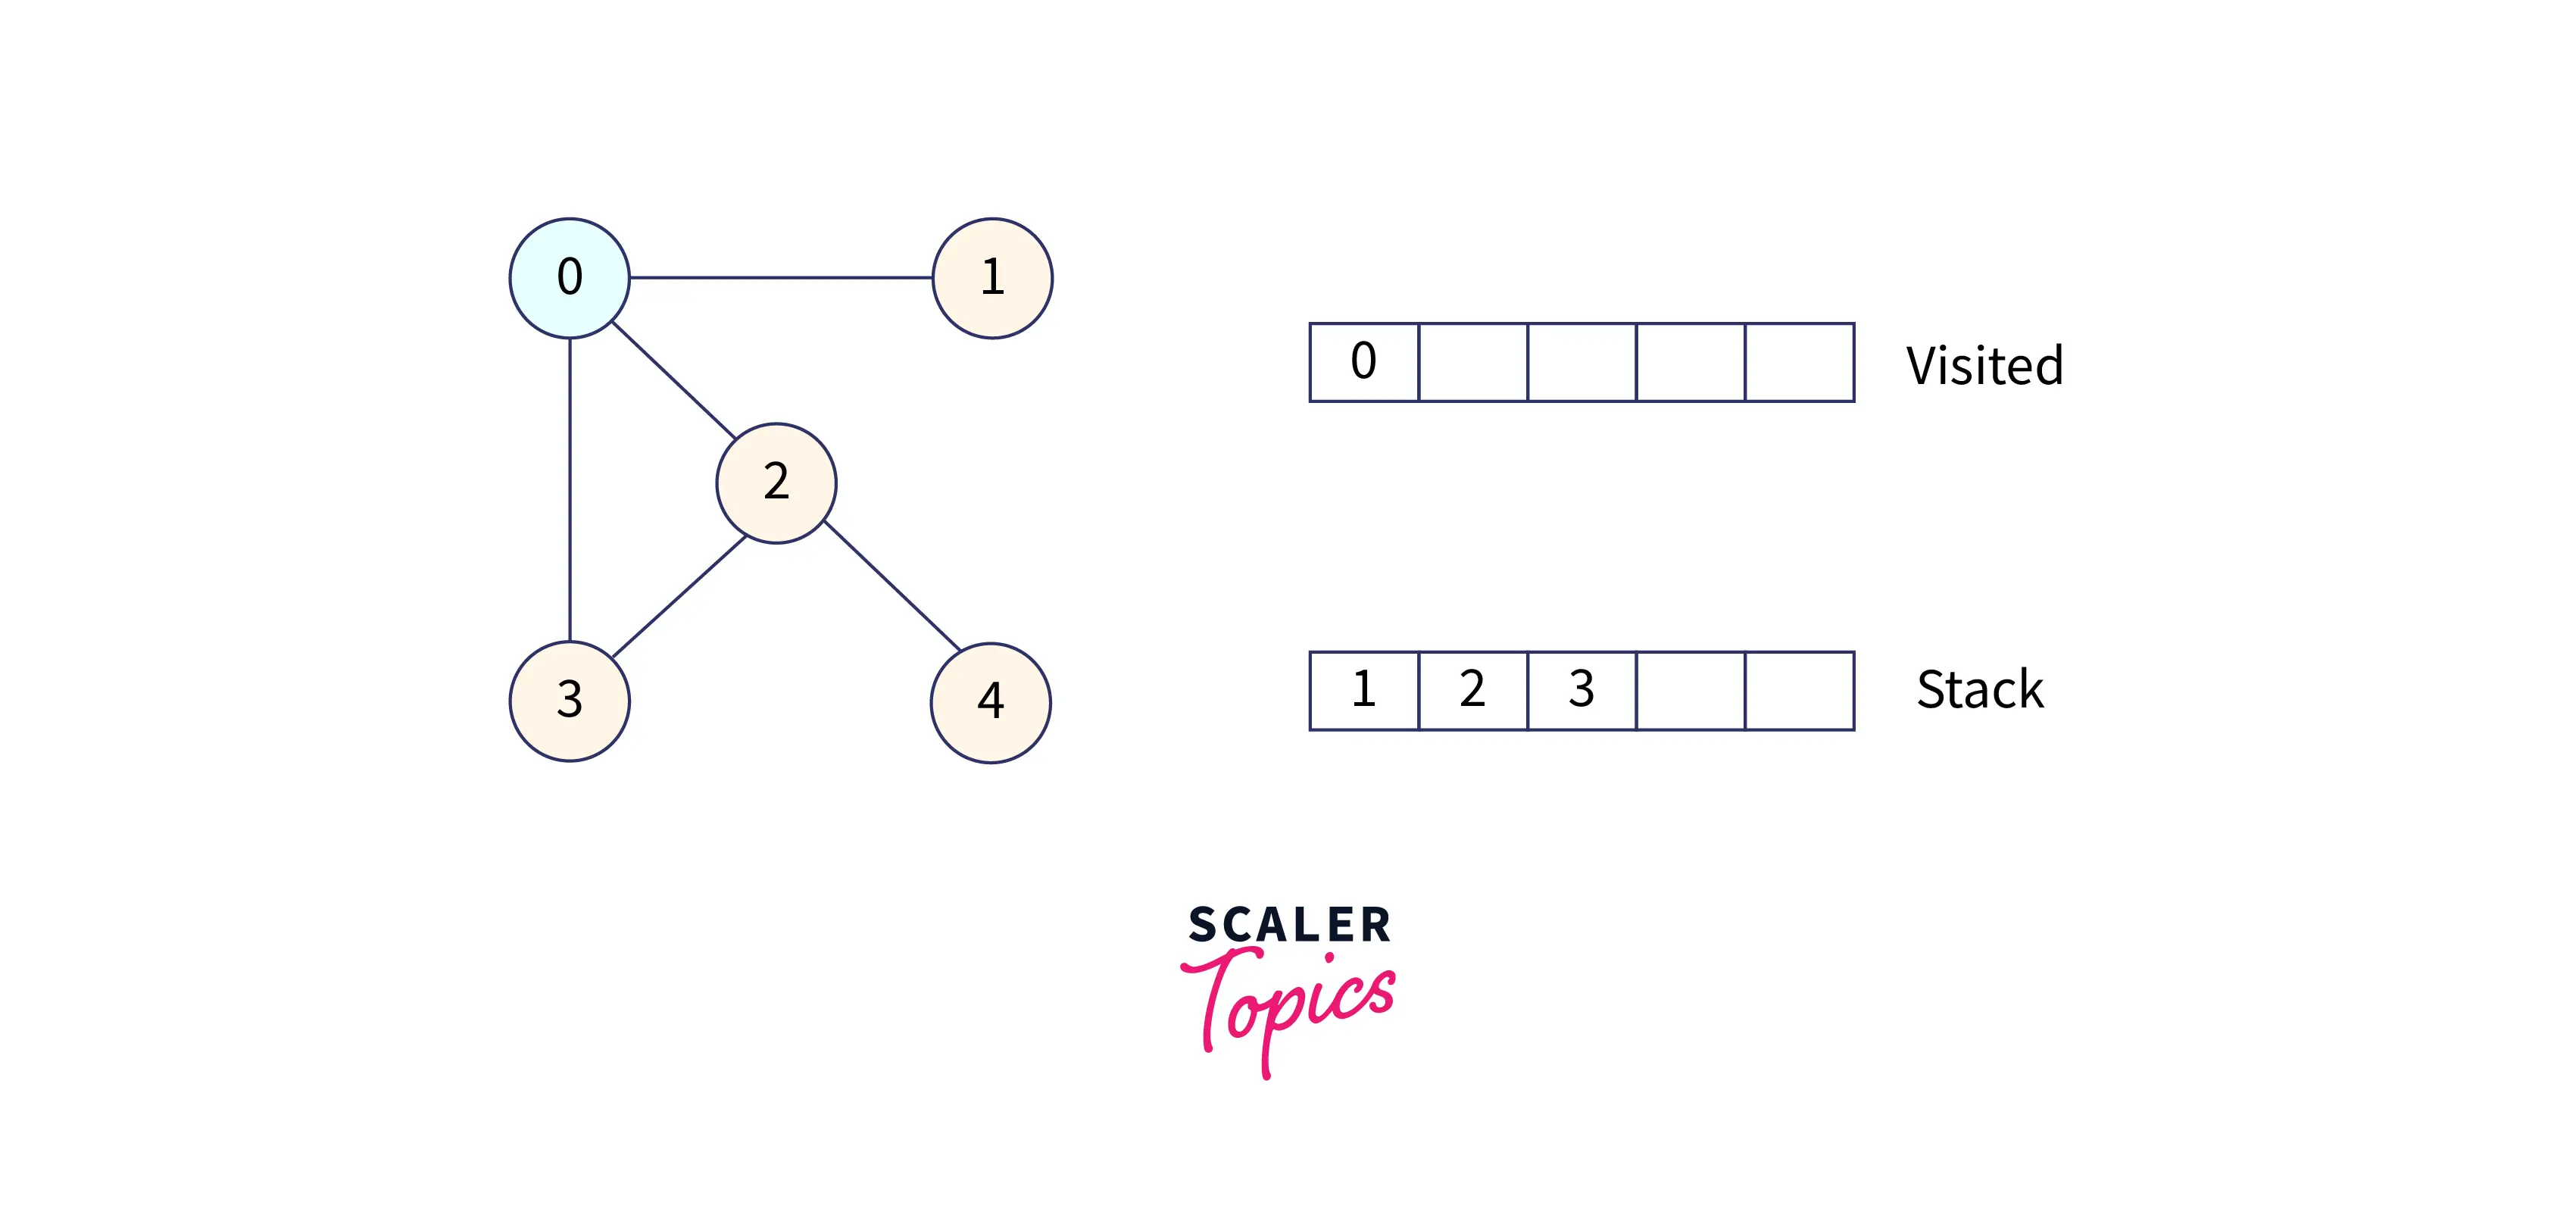 visit-node-0-and-all-adjacent-unvisited-node-on-stack